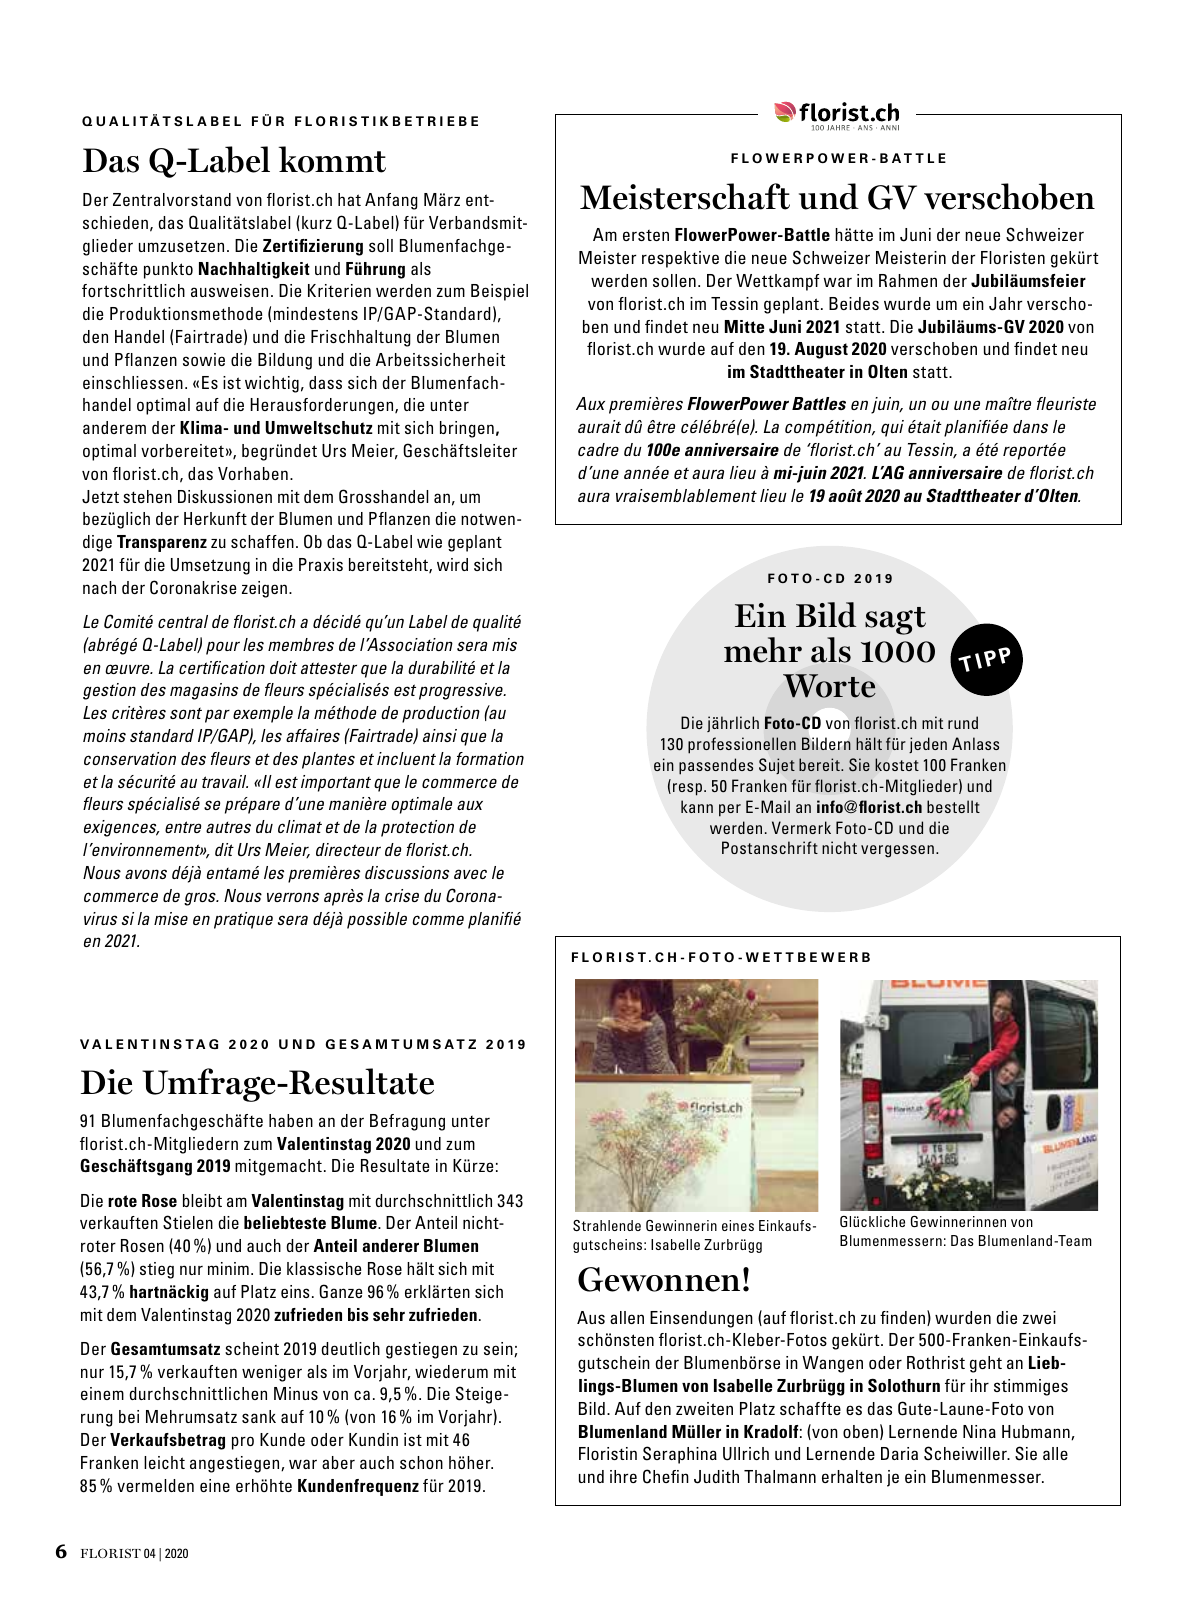 Vorschau Florist - Ausgabe April 2020 Seite 4